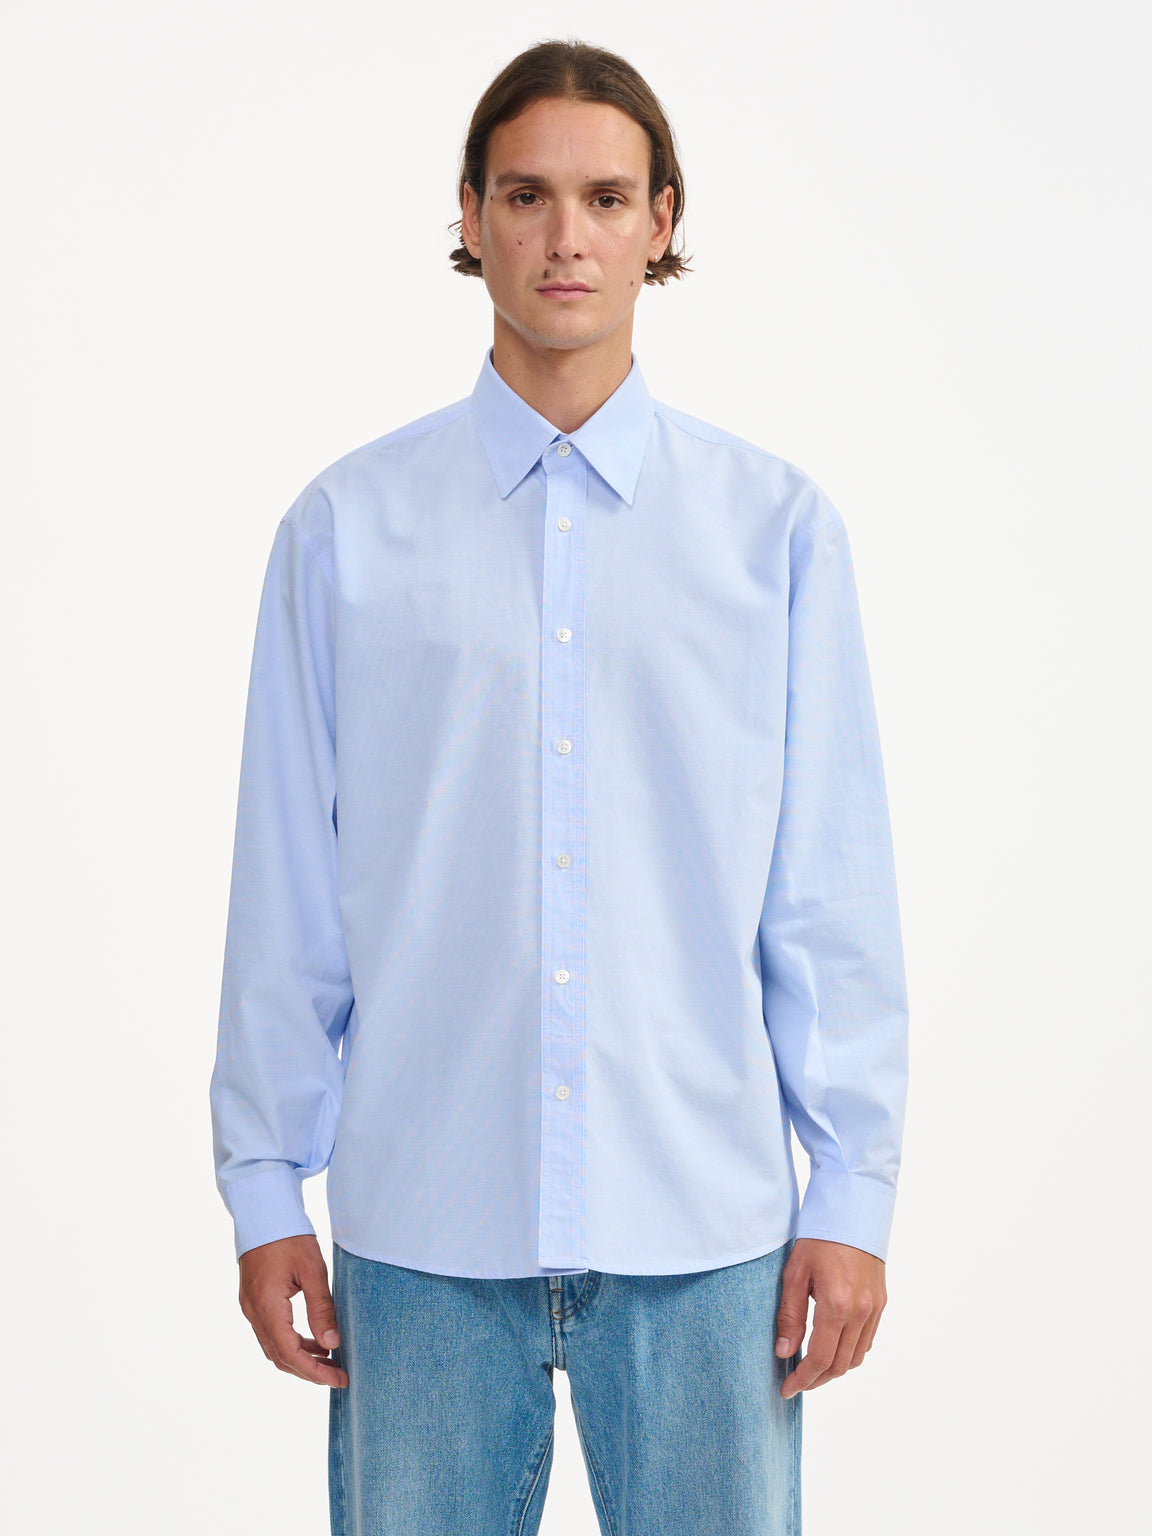 Light Shirt - Blue | Men Collection | Bellerose